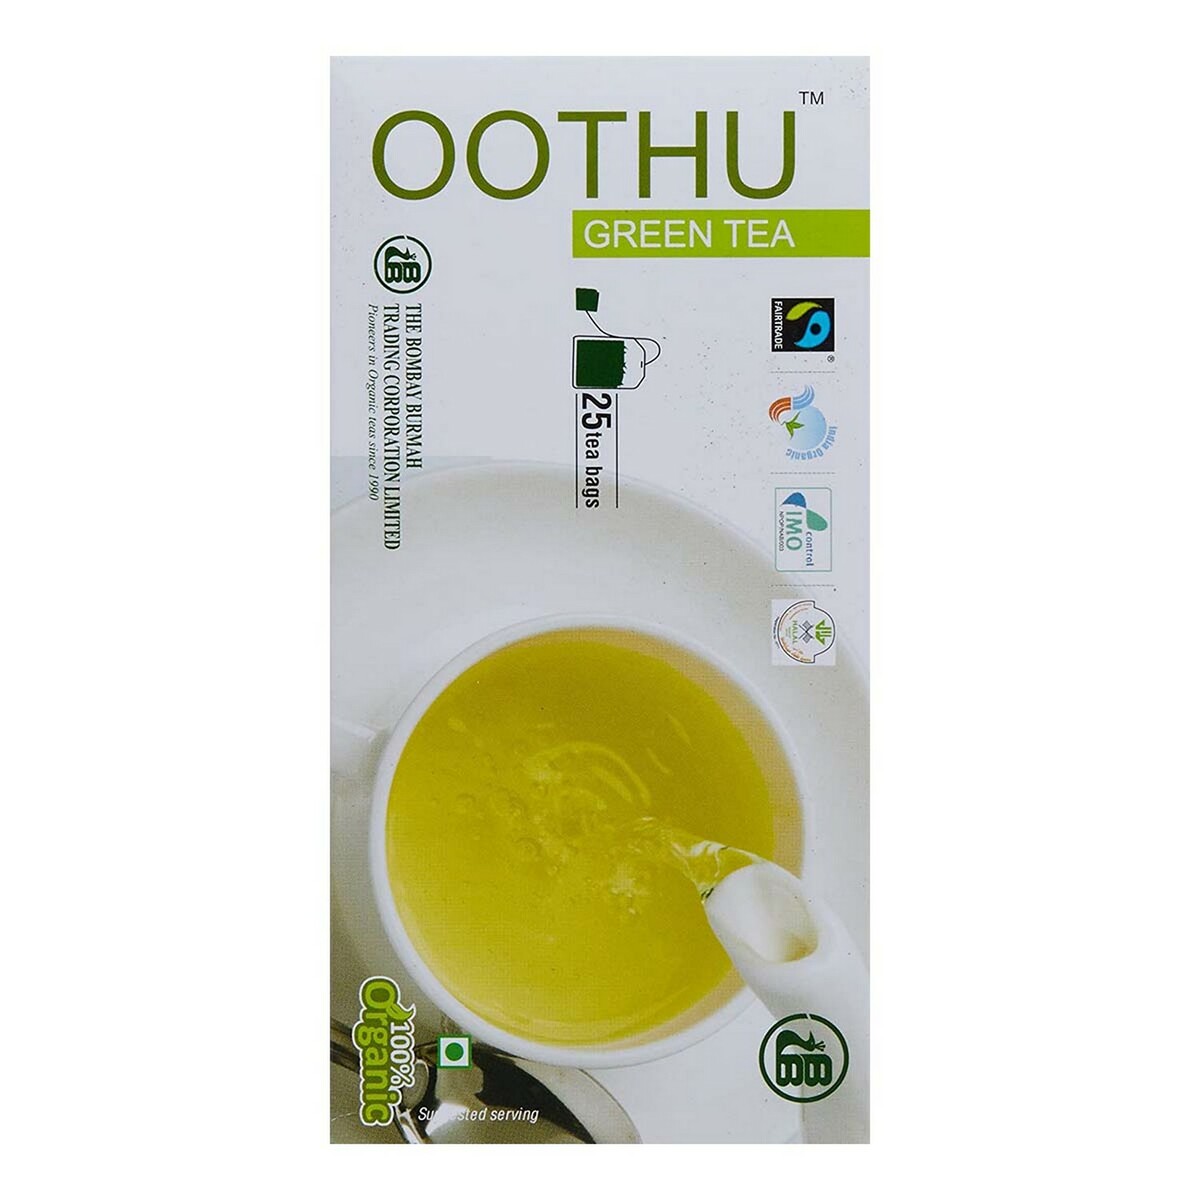 Oothu Organic Green Tea 50g